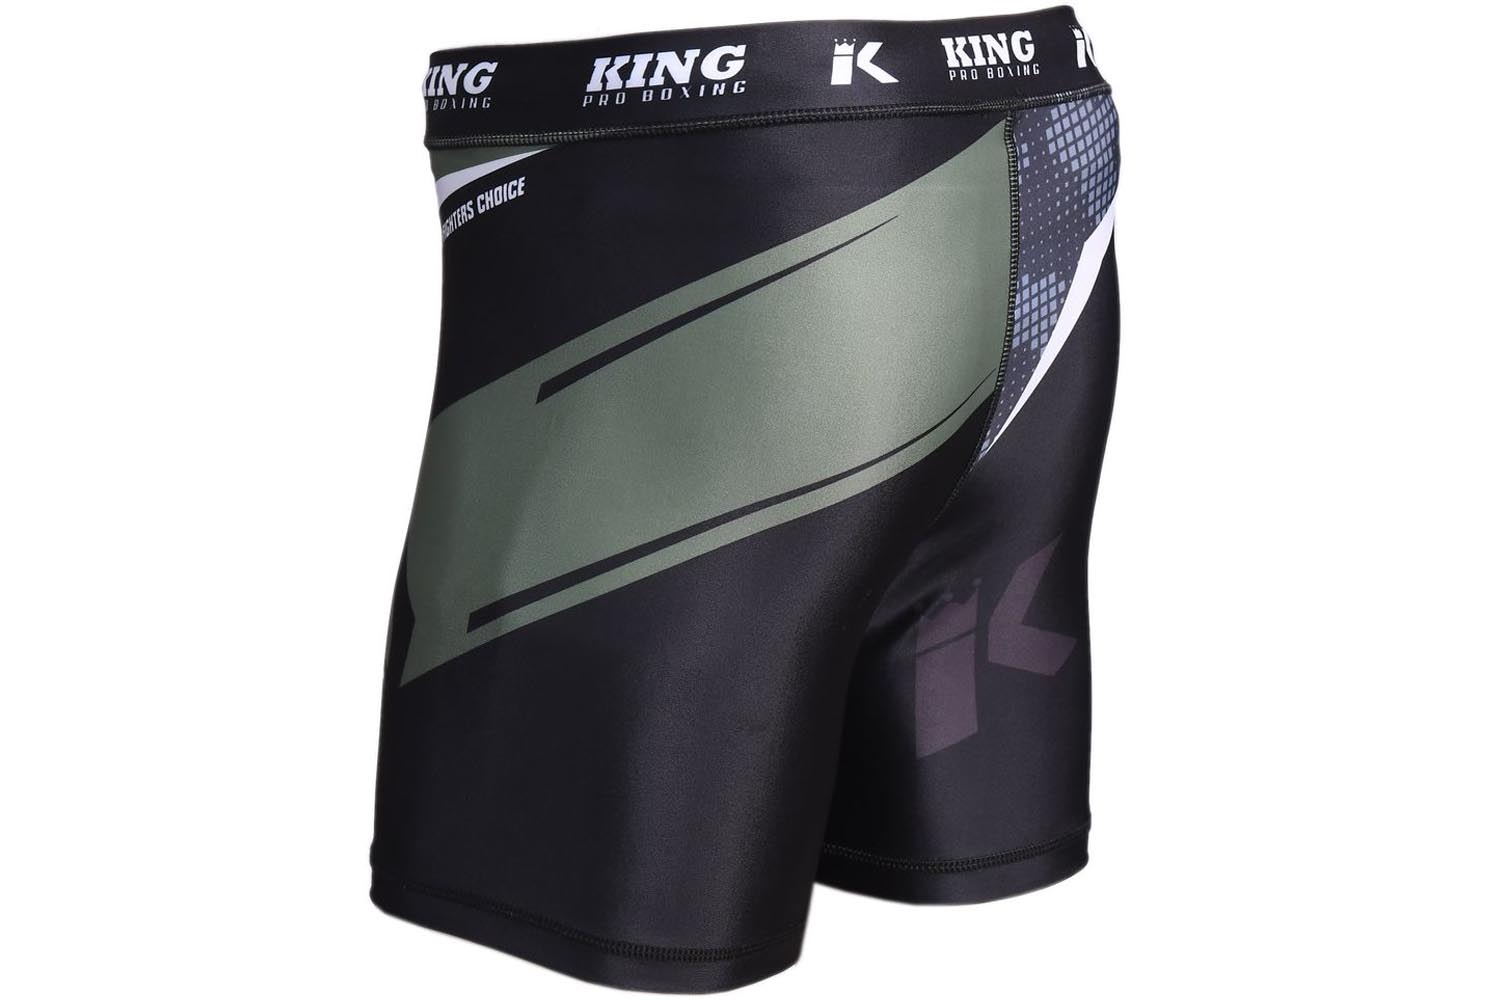 Pantalones de Compresión Storm, King Pro boxing - DragonSports.eu